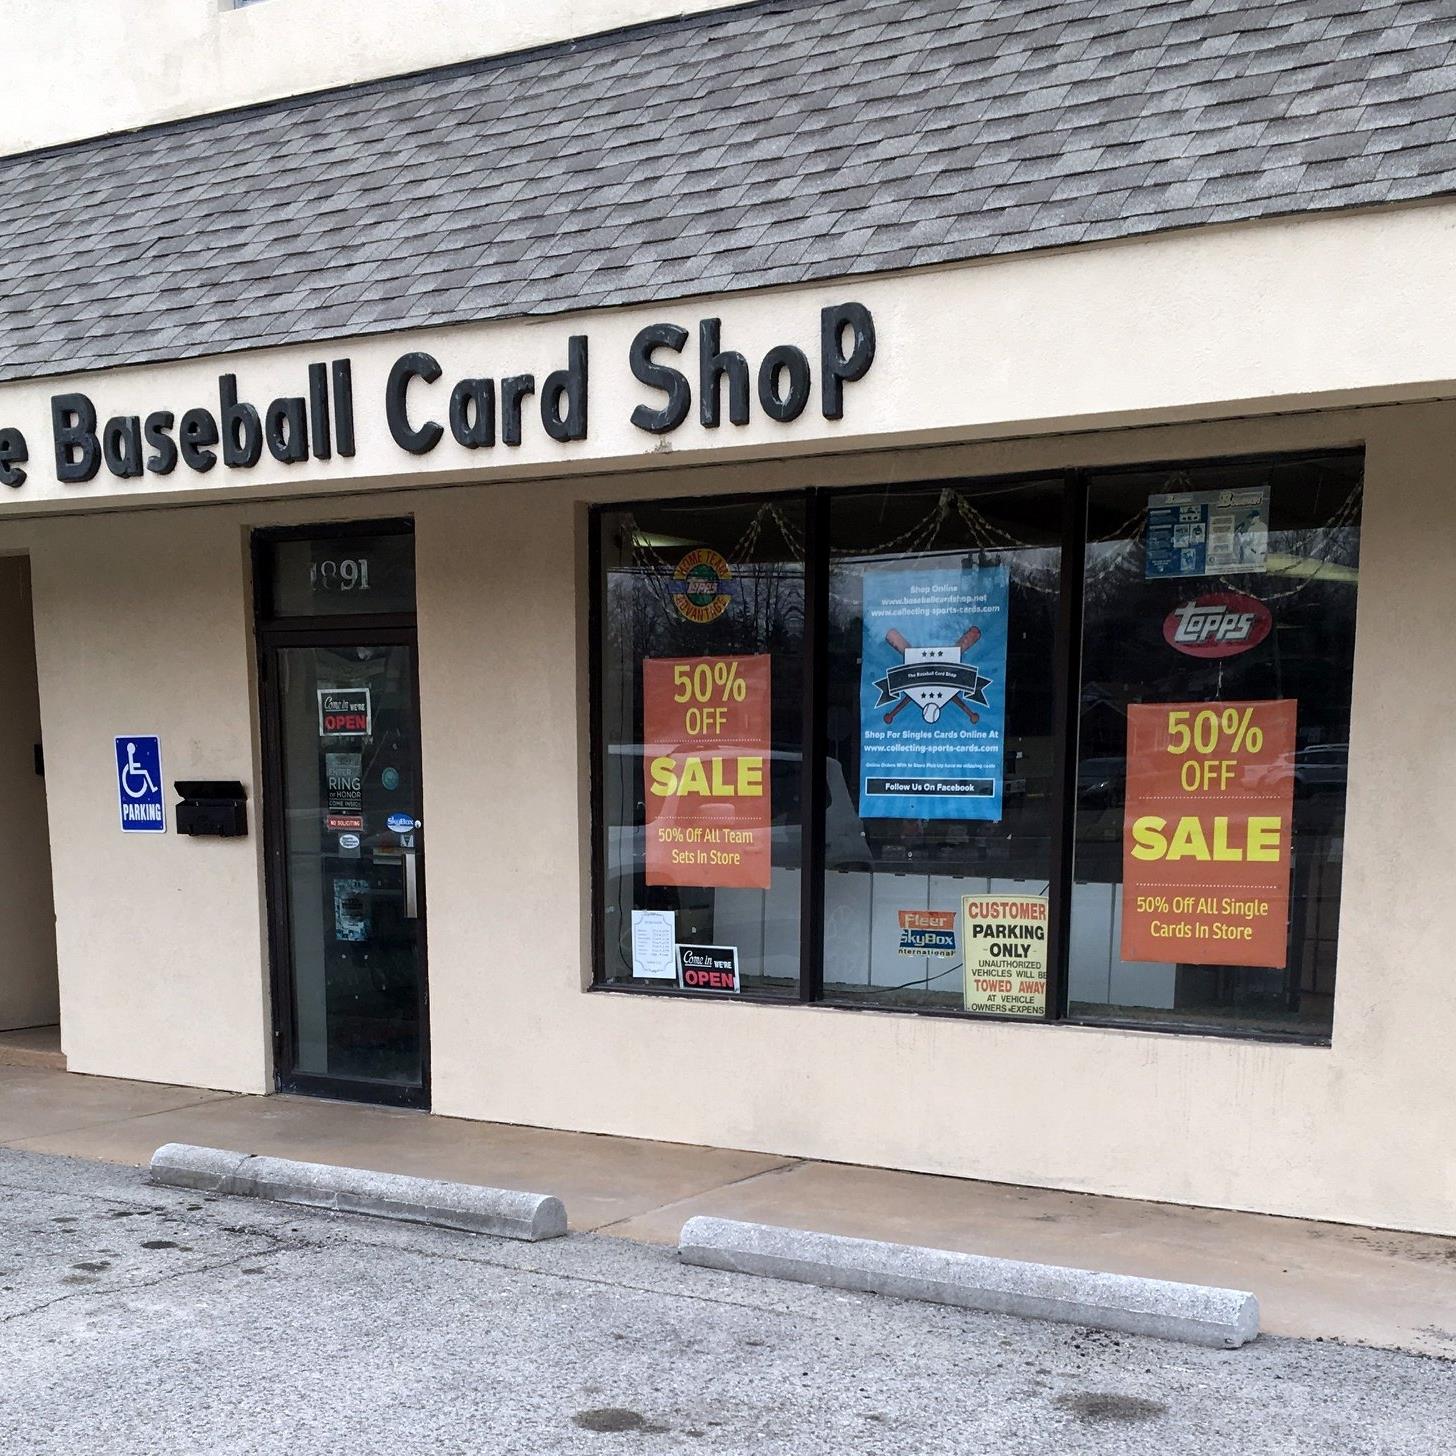 The Baseball Card Shop